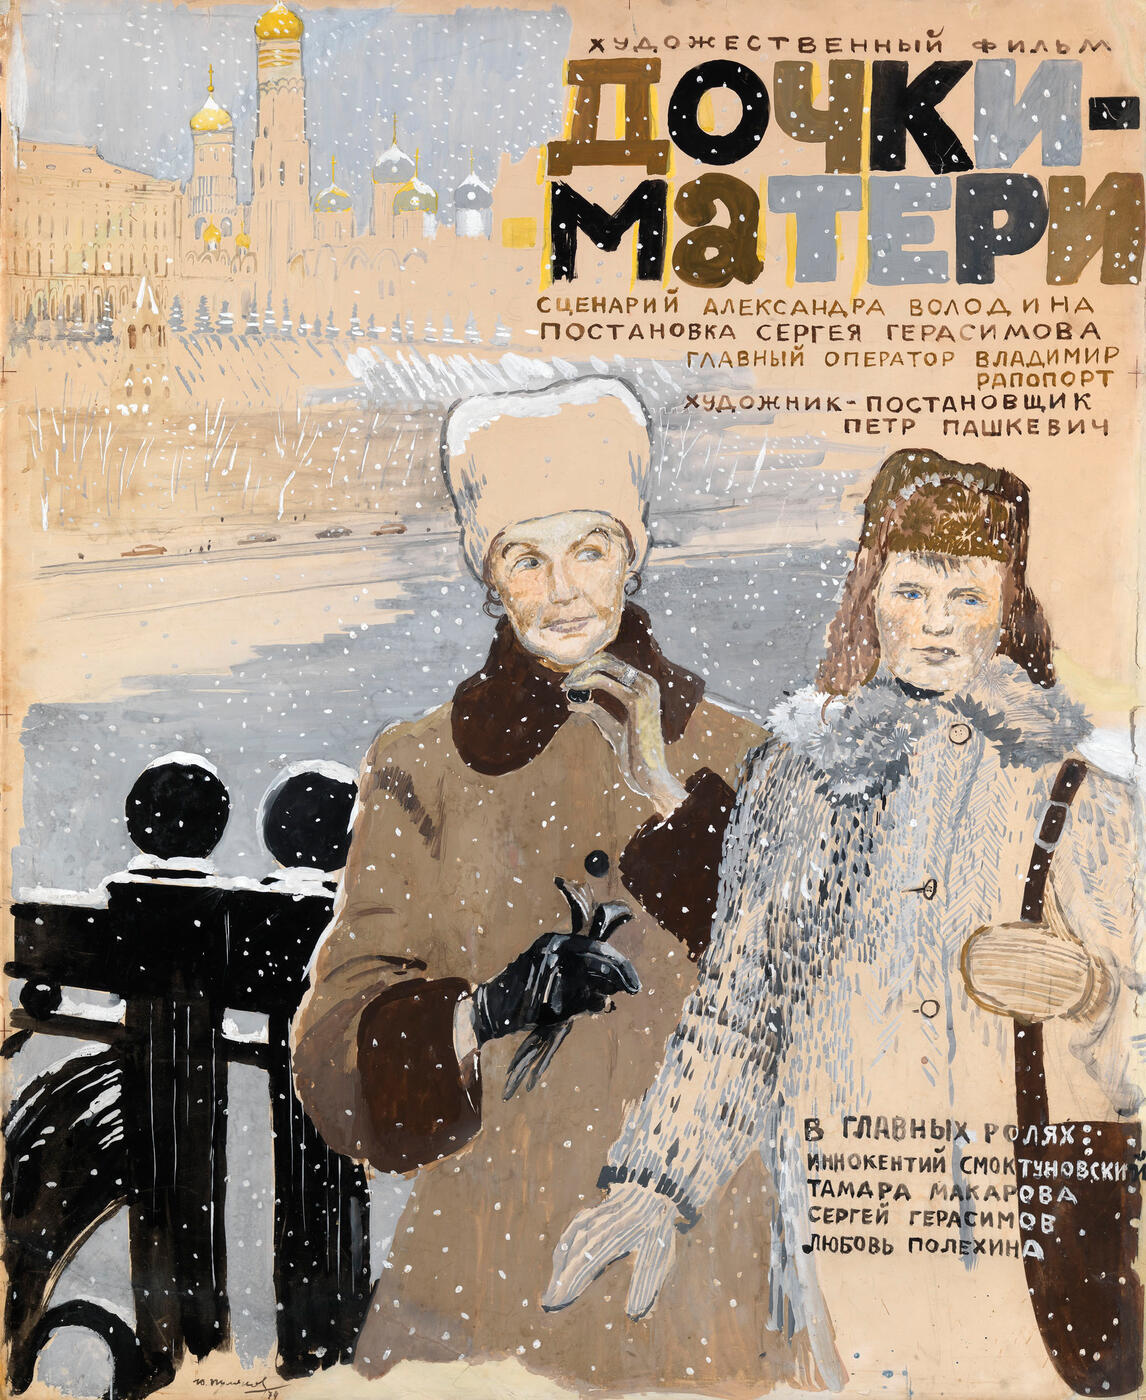 Poster Design for the S. Gerasimov Film "Dochki- materi"